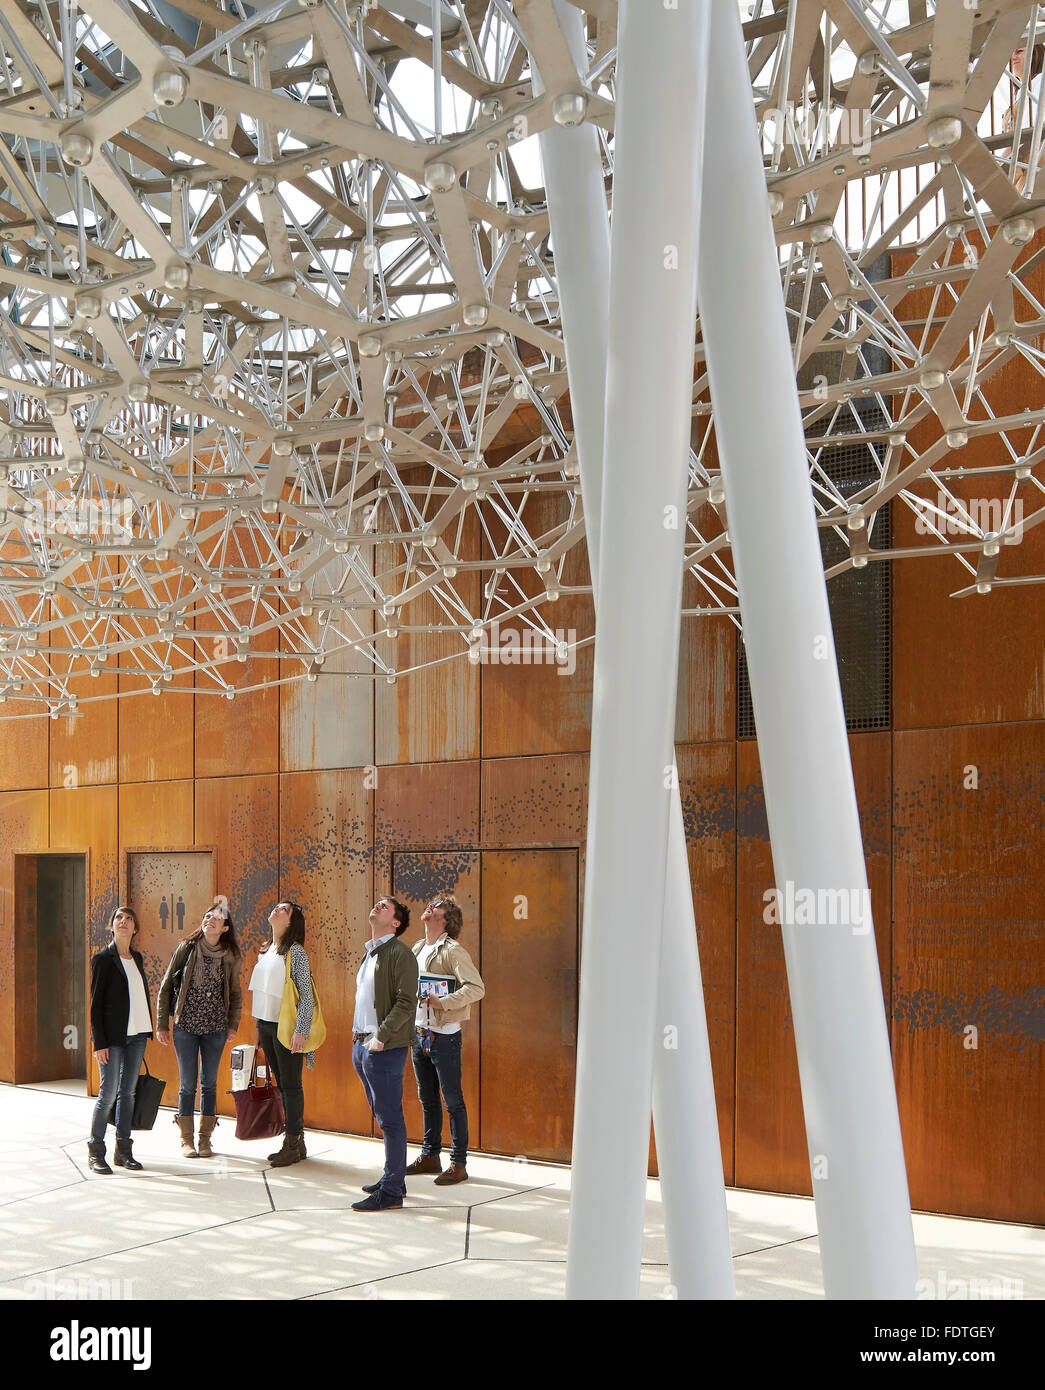 Sous le toit de la structure de la ruche. L'Expo Milan 2015, UK Pavilion, Milan, Italie. Architecte : Wolfgang Buttress, 2015. Banque D'Images